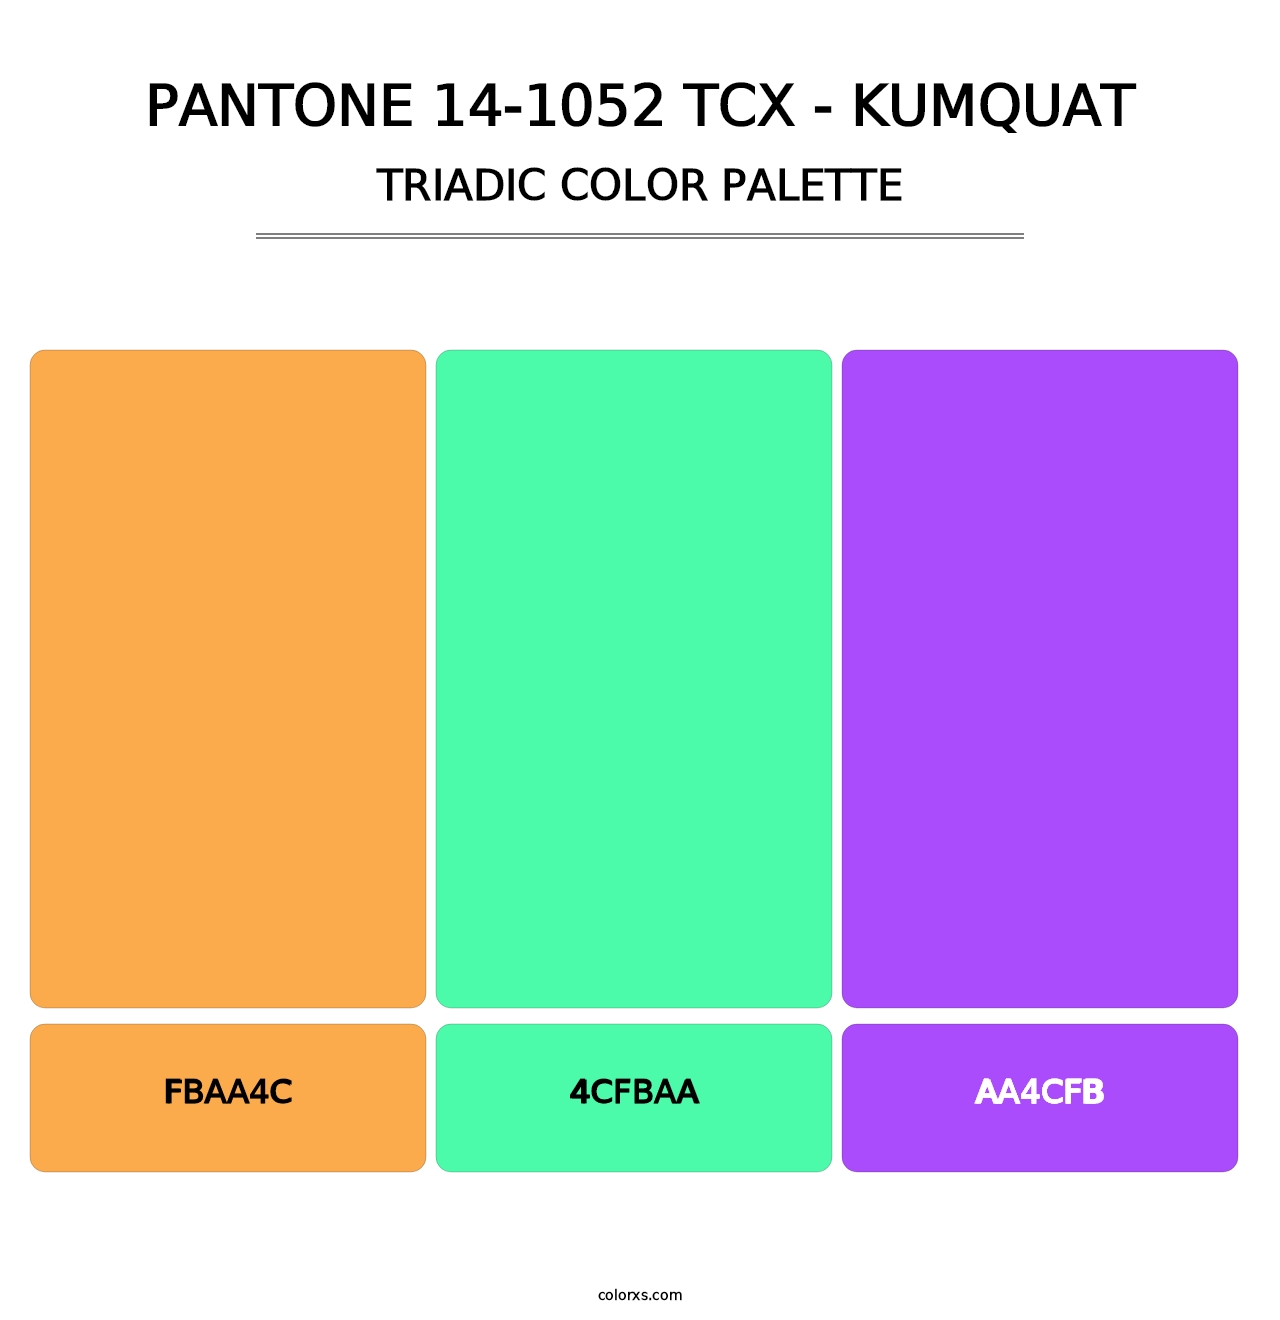 PANTONE 14-1052 TCX - Kumquat - Triadic Color Palette